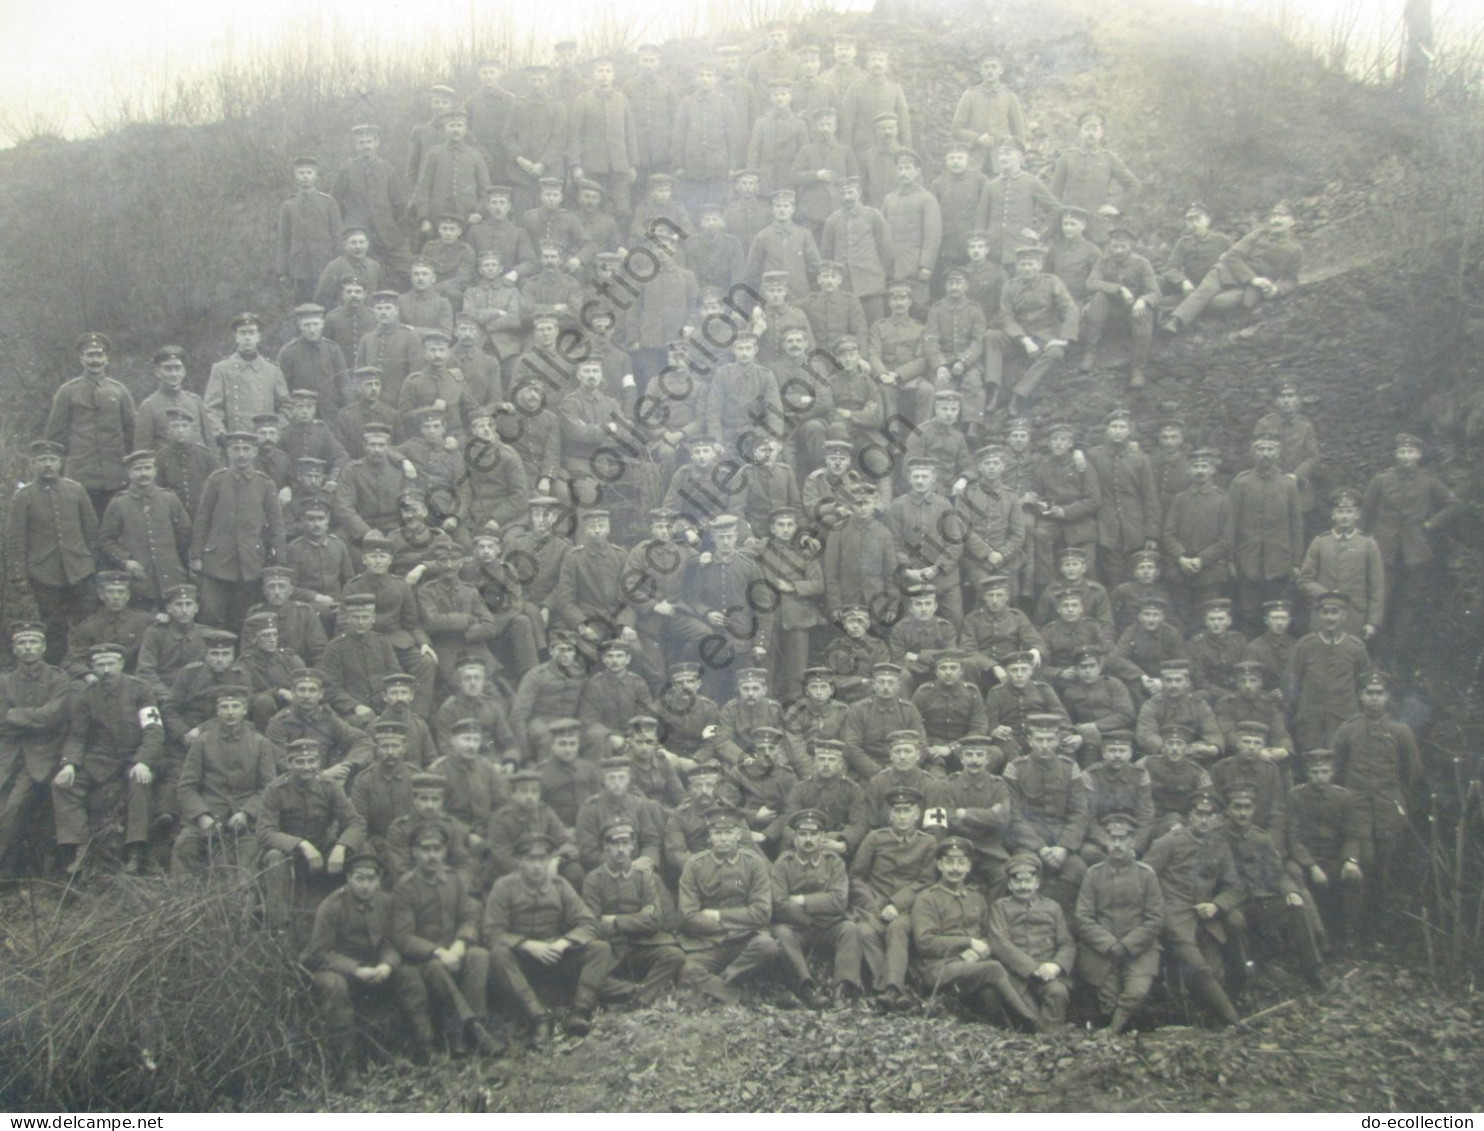 FRANCE photos CAMBRAI (59 Nord) canon 1917 DOMPIERRE Infanterie Regiment 79 soldats allemands photo guerre 1914-1918 WW1